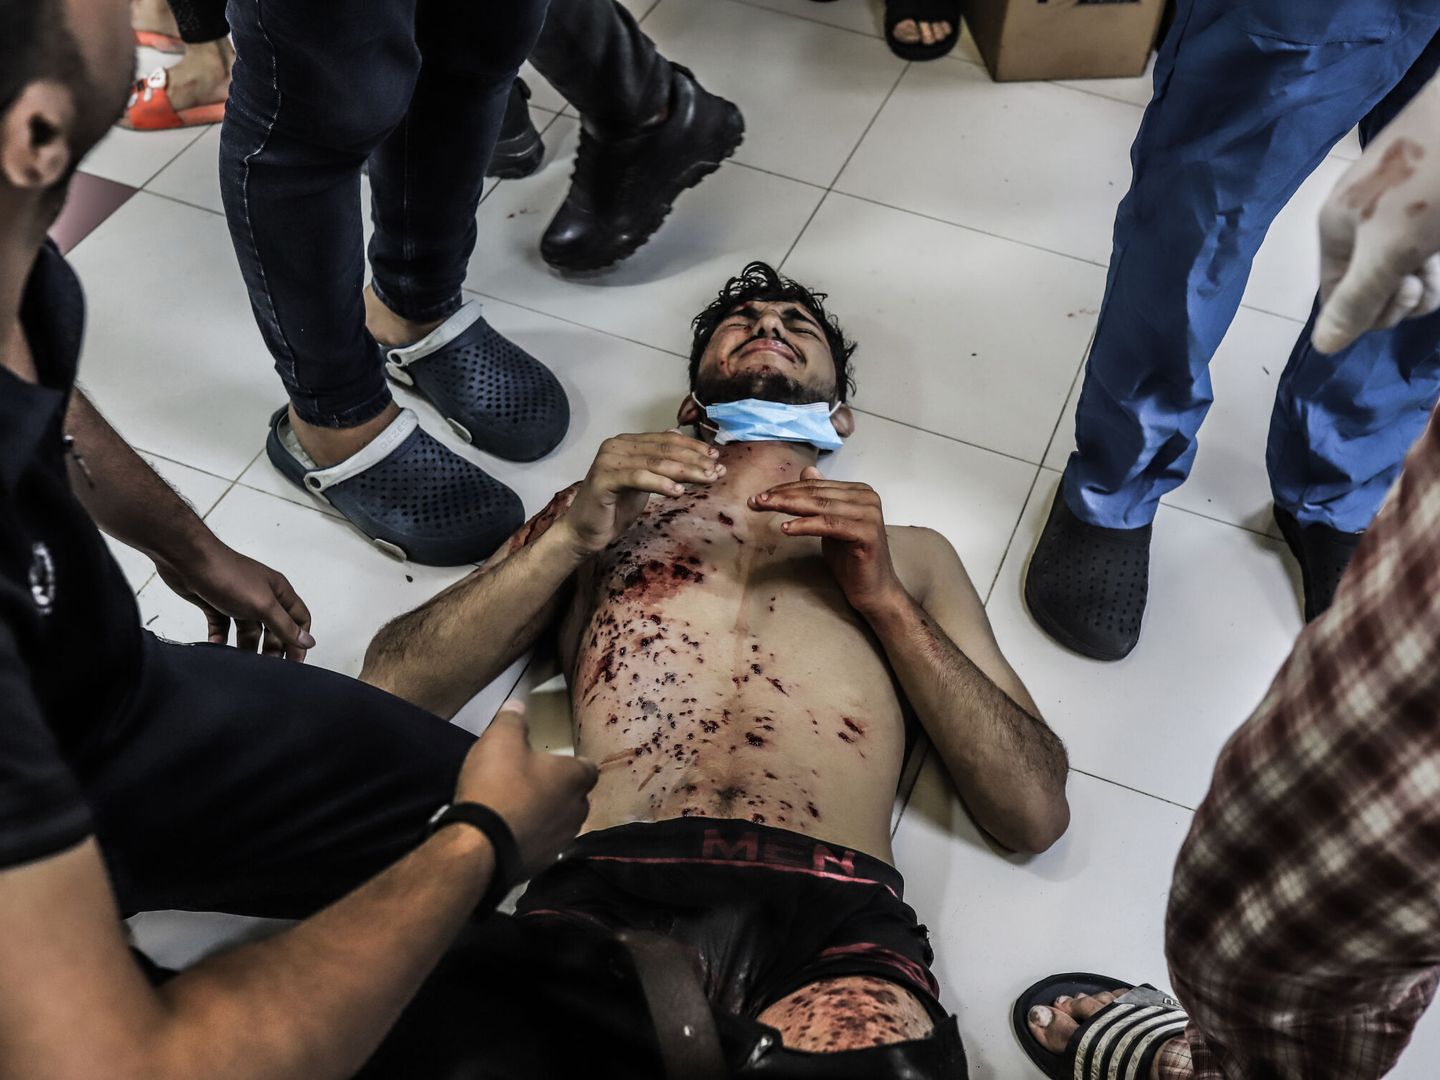 Un palestino, herido, en el suelo del hospital Al Shifa, en Gaza. (DPA/Mohammad Abu Elsebah)